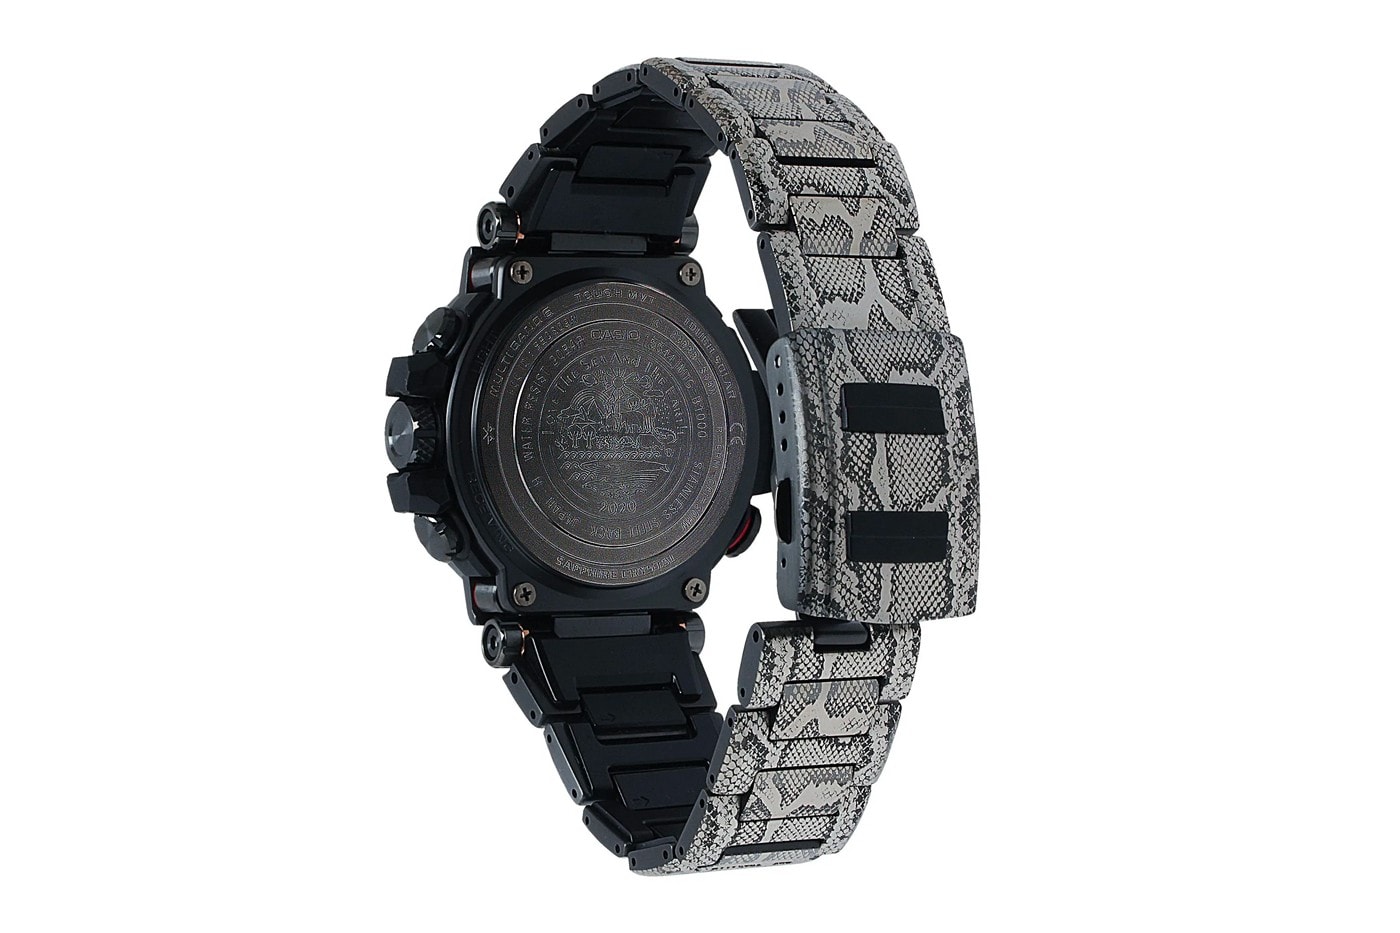 G-Shock 攜手動保組織打造「蛇鱗」樣式 MTGB1000 錶款